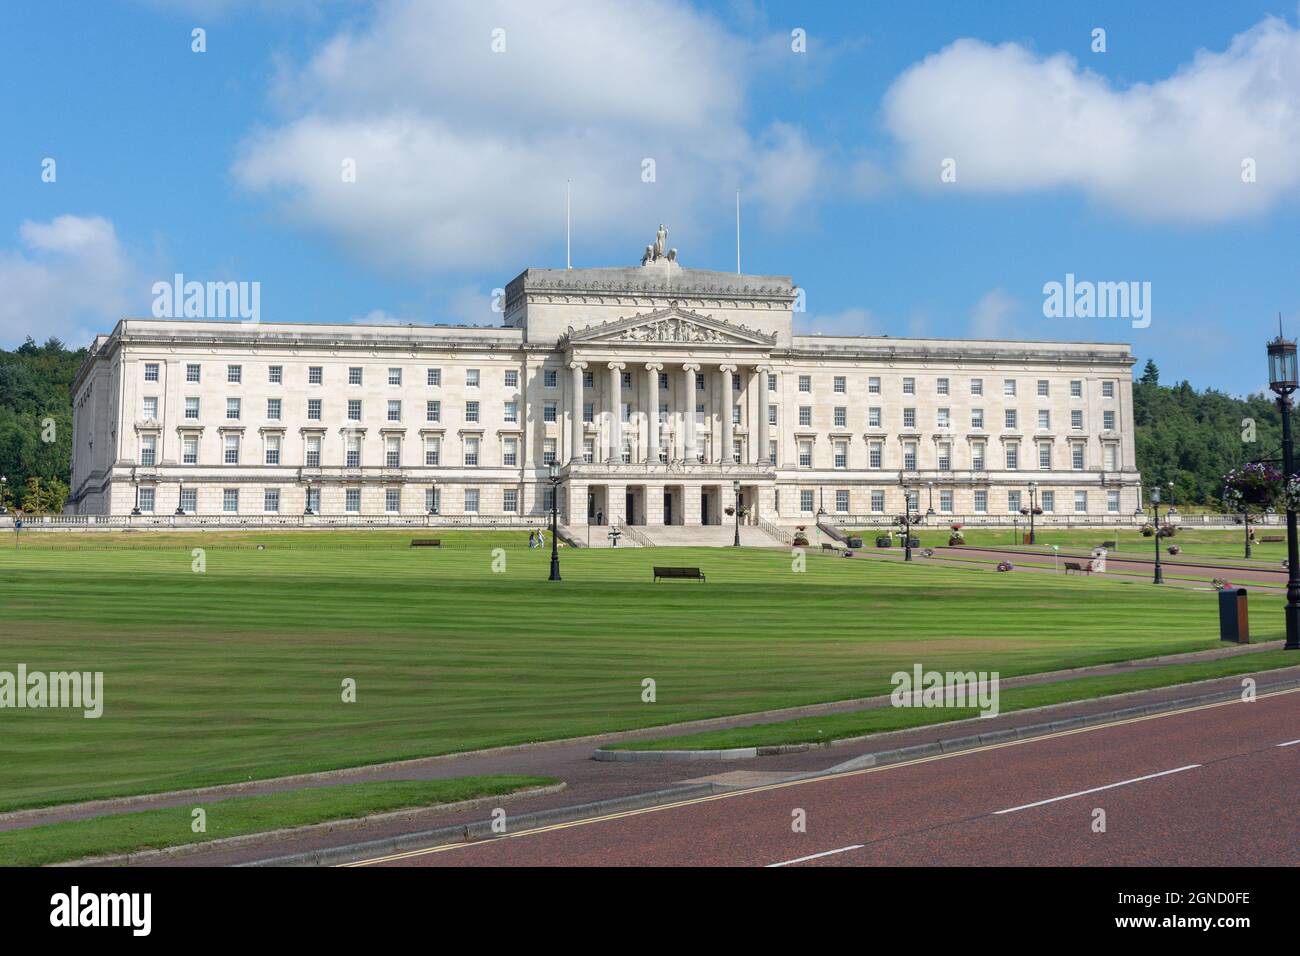 Parlamento dell'Assemblea dell'Irlanda del Nord (Storemont) Building, Storemont, City of Belfast, Irlanda del Nord, Regno Unito Foto Stock